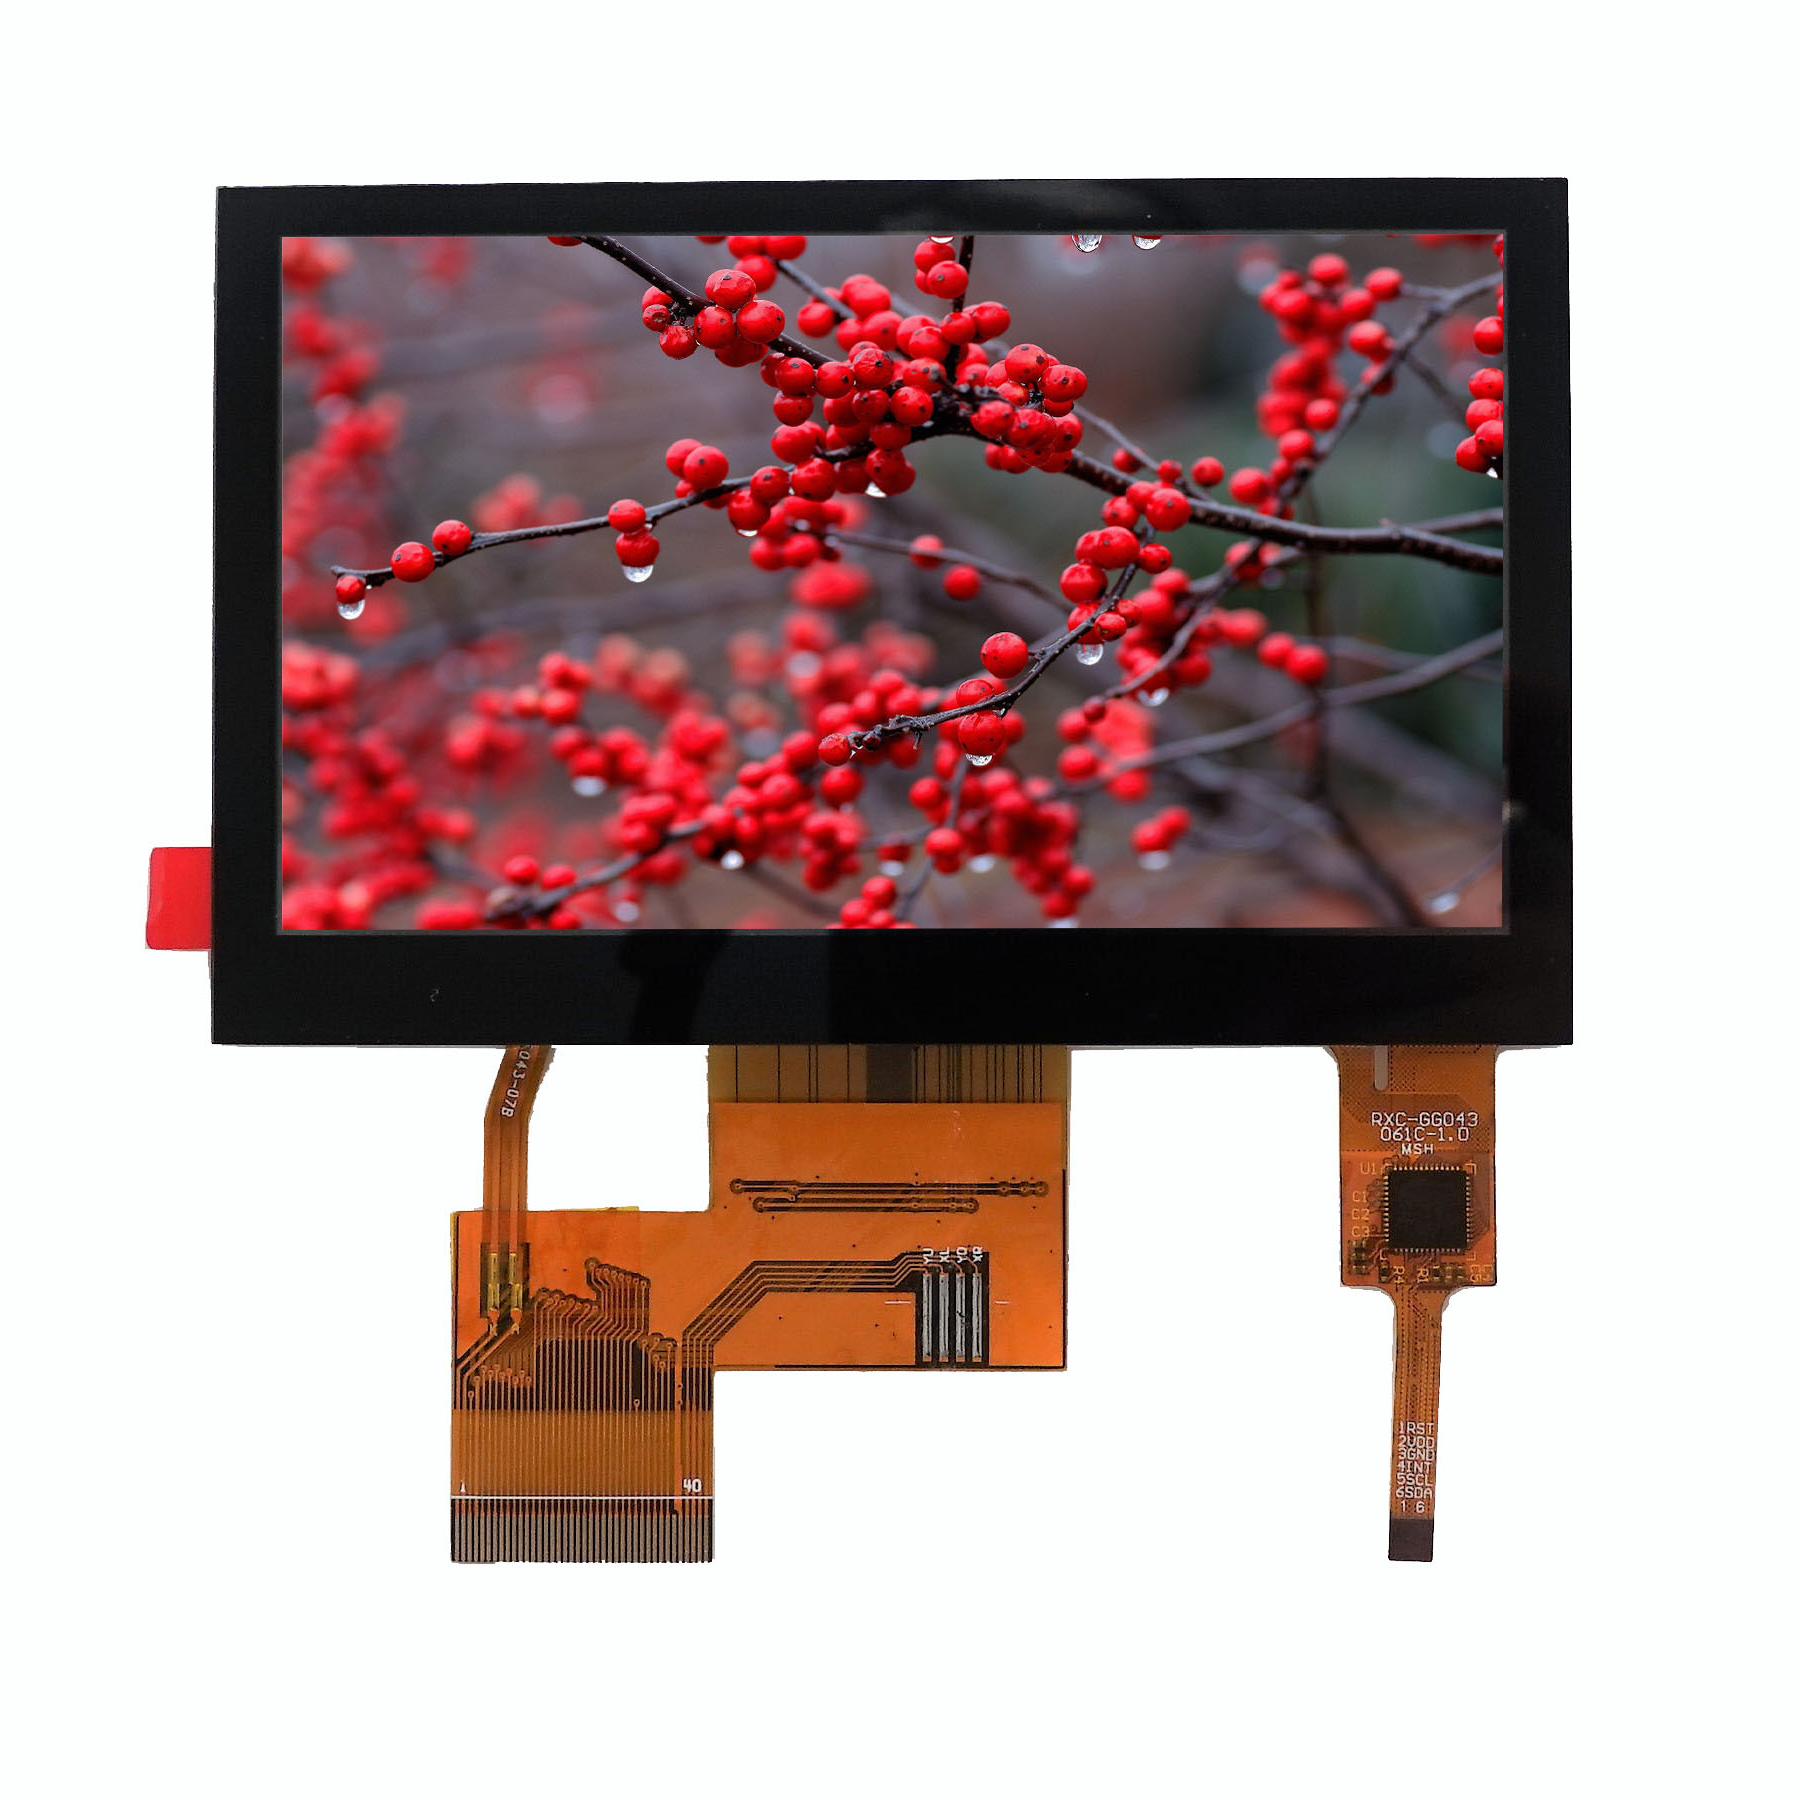 Antara muka utama skrin paparan LCD dan penerangan produk